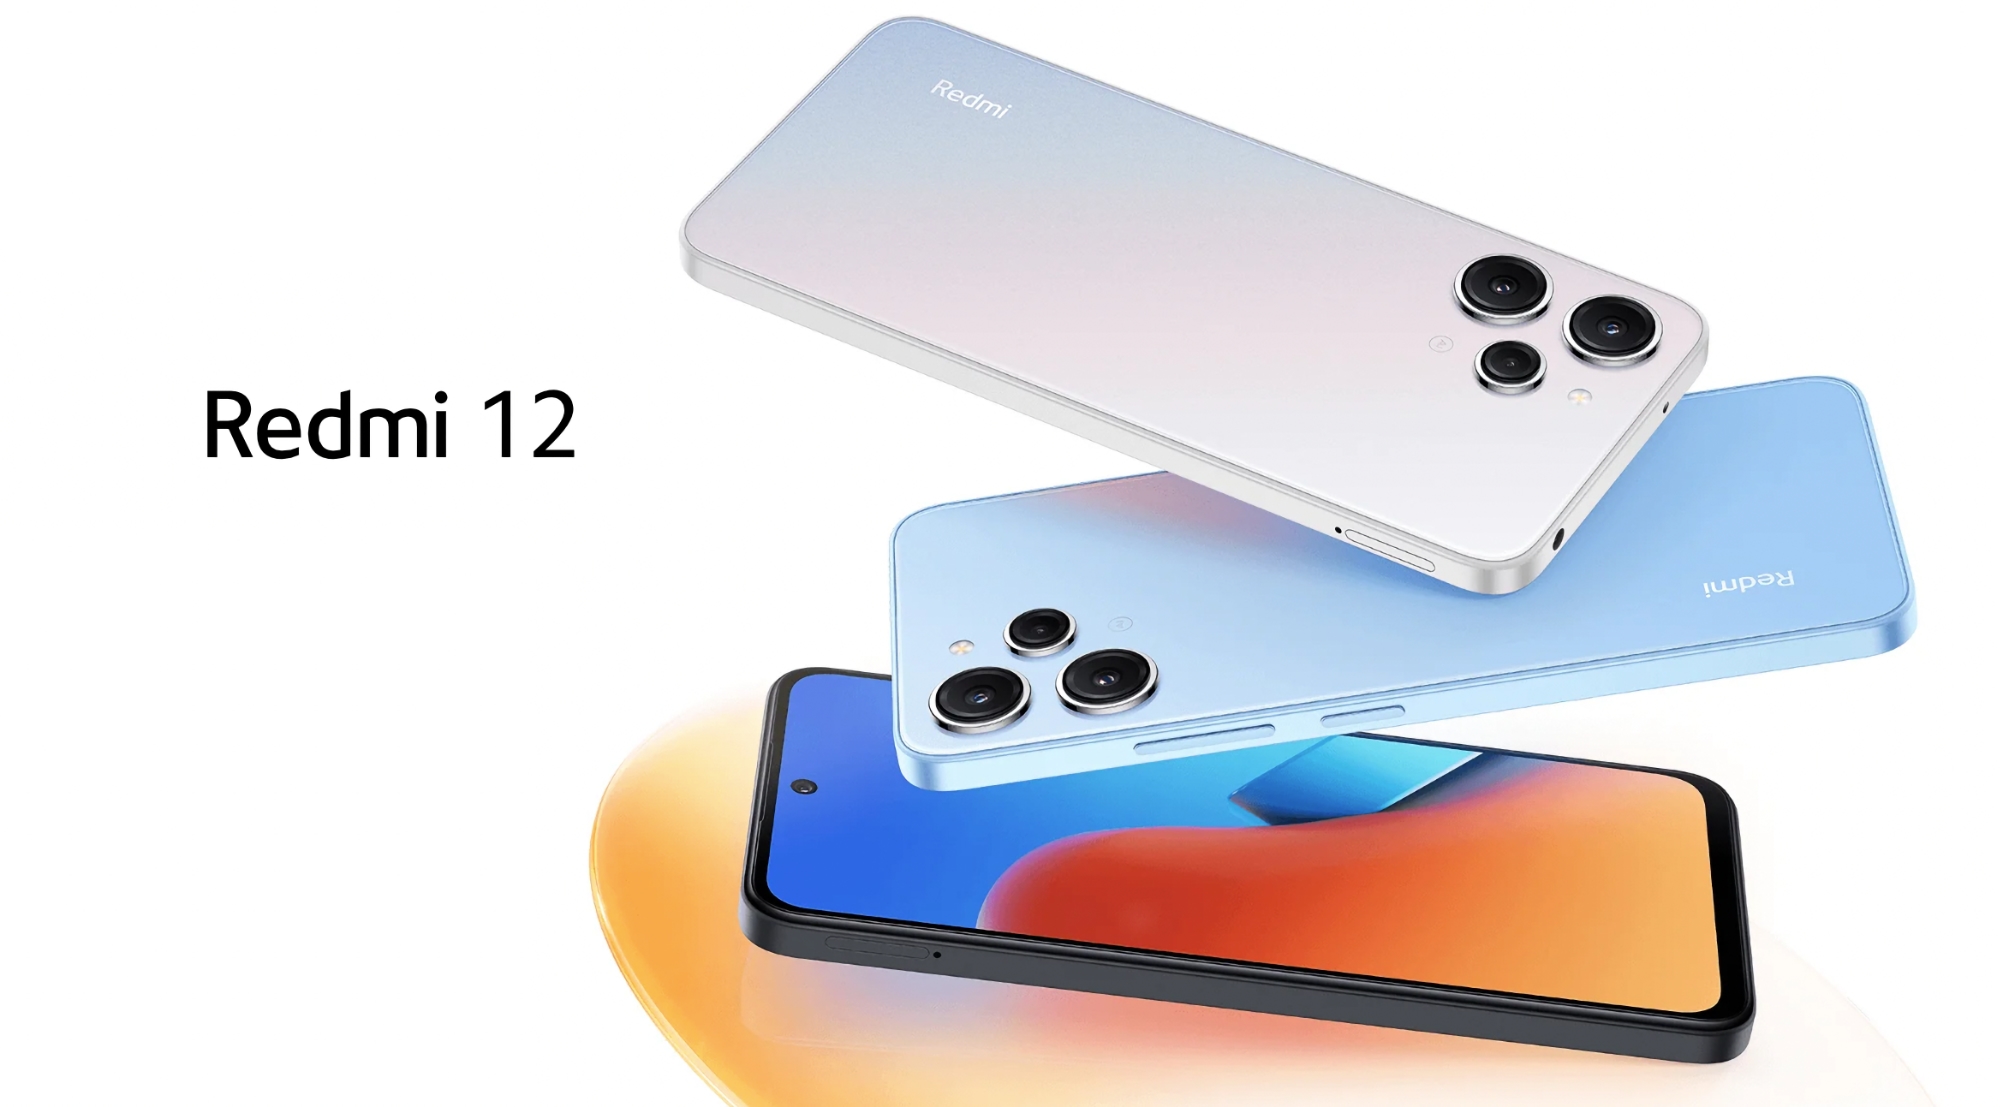 Xiaomi dévoile le Redmi 12 : le nouveau smartphone économique de l'entreprise avec un écran à 90 Hz, une puce Helio G88 et un appareil photo de 50 MP.